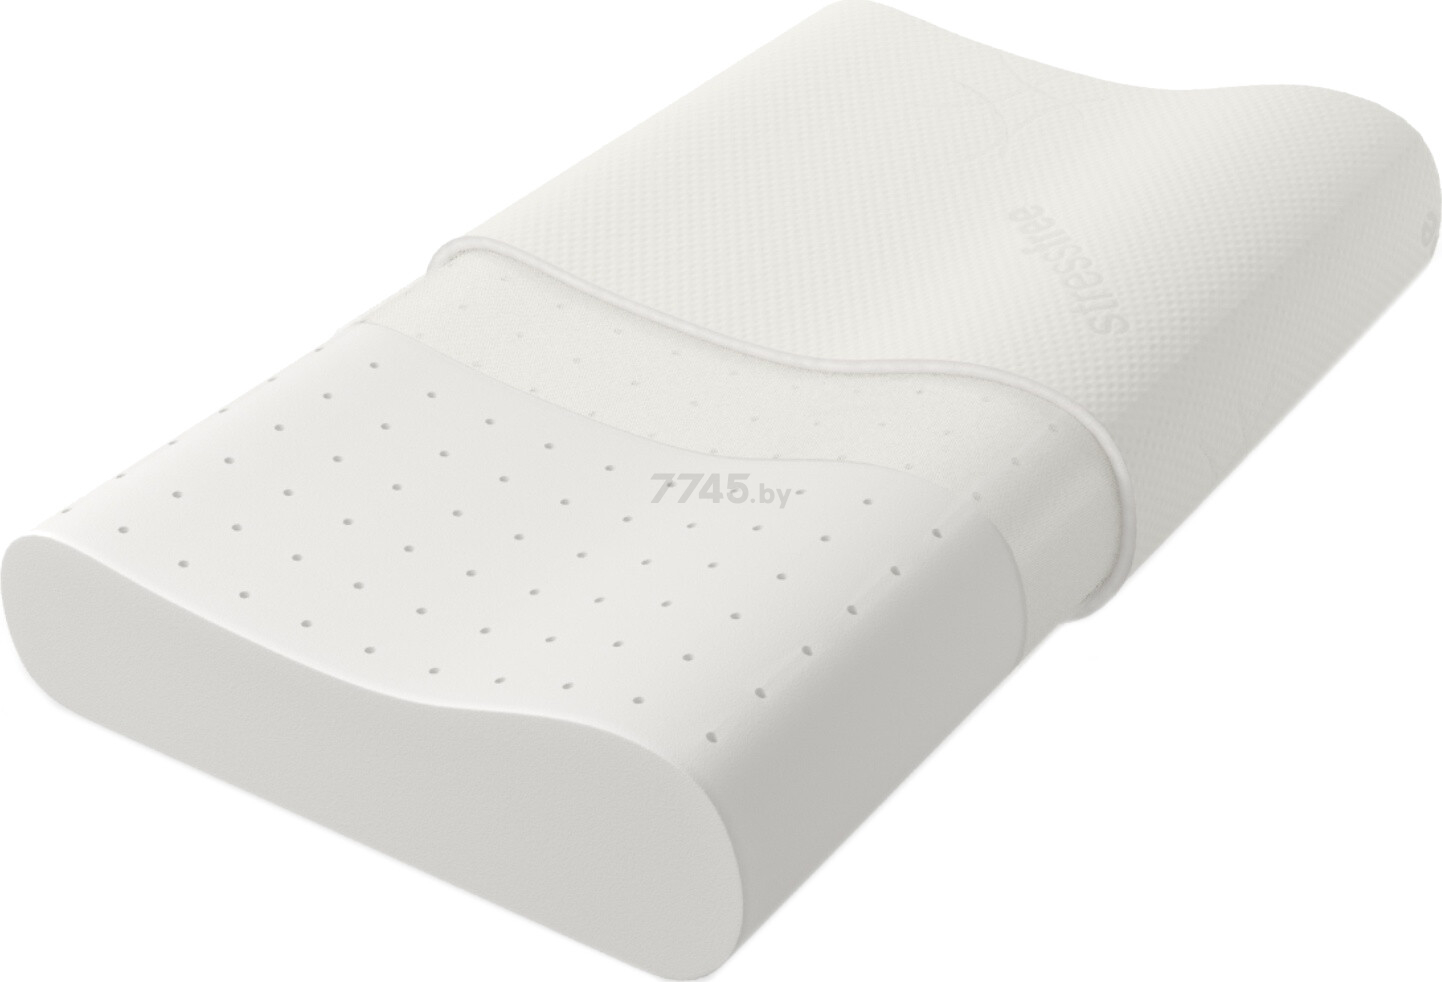 Подушка ортопедическая для сна VEGAS Medium Wave 60х37 см